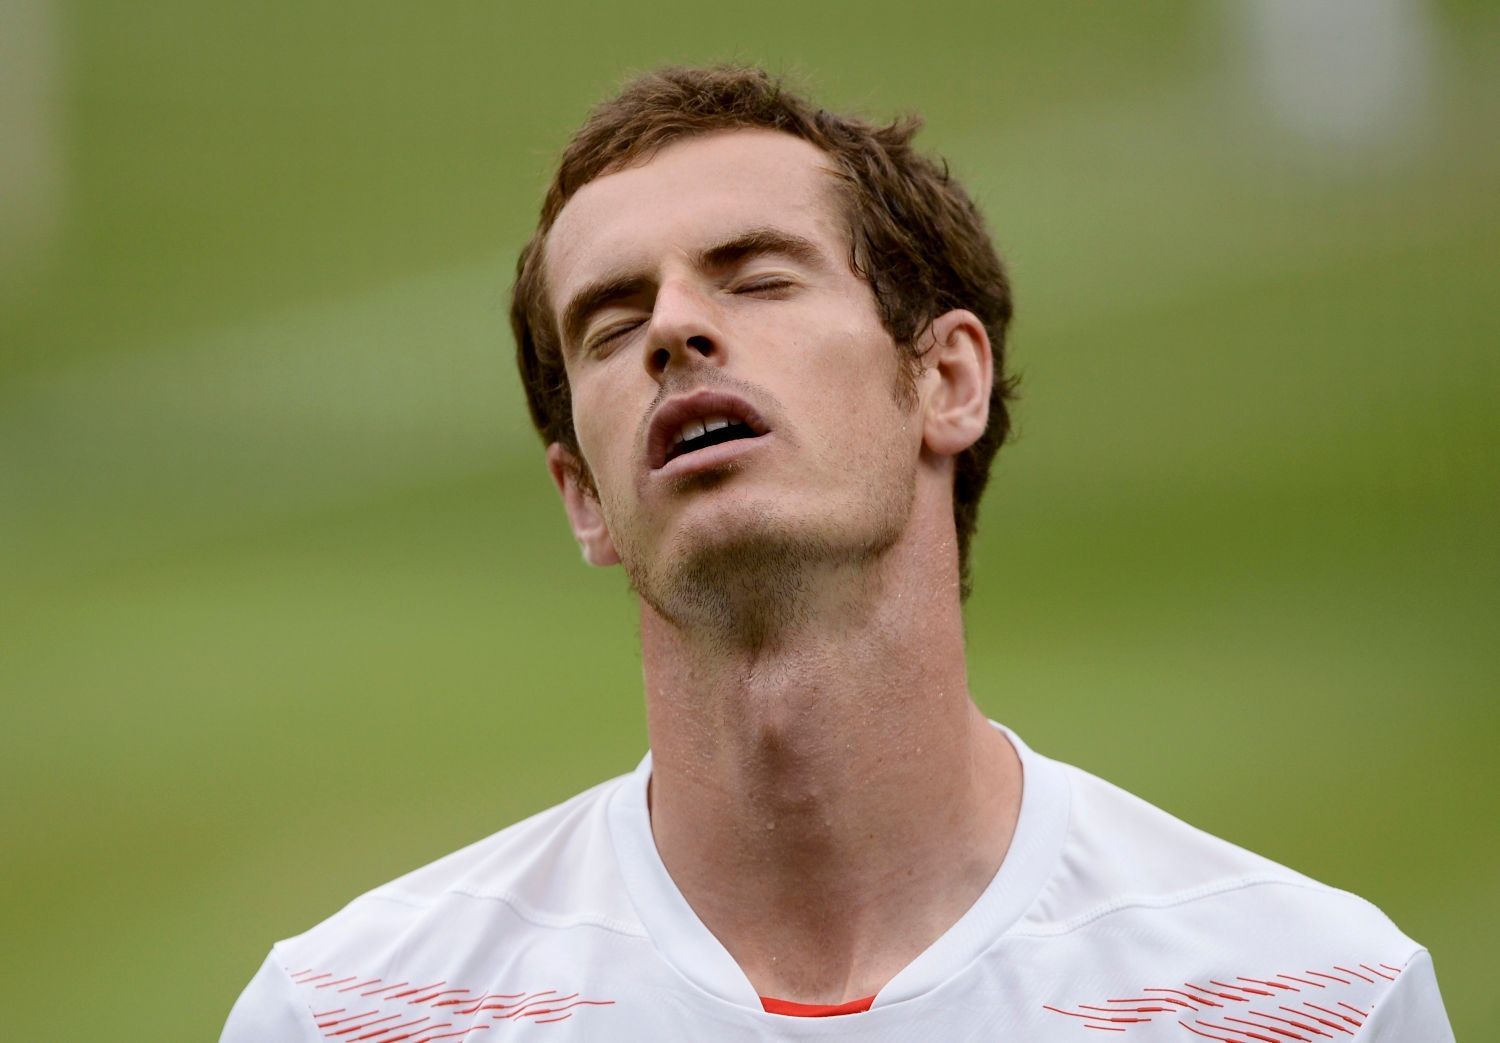 Britský tenista Andy Murray je zklamaný po prohraném utkání se Švýcarem Rogerem Federerem ve finále Wimbledonu 2012.